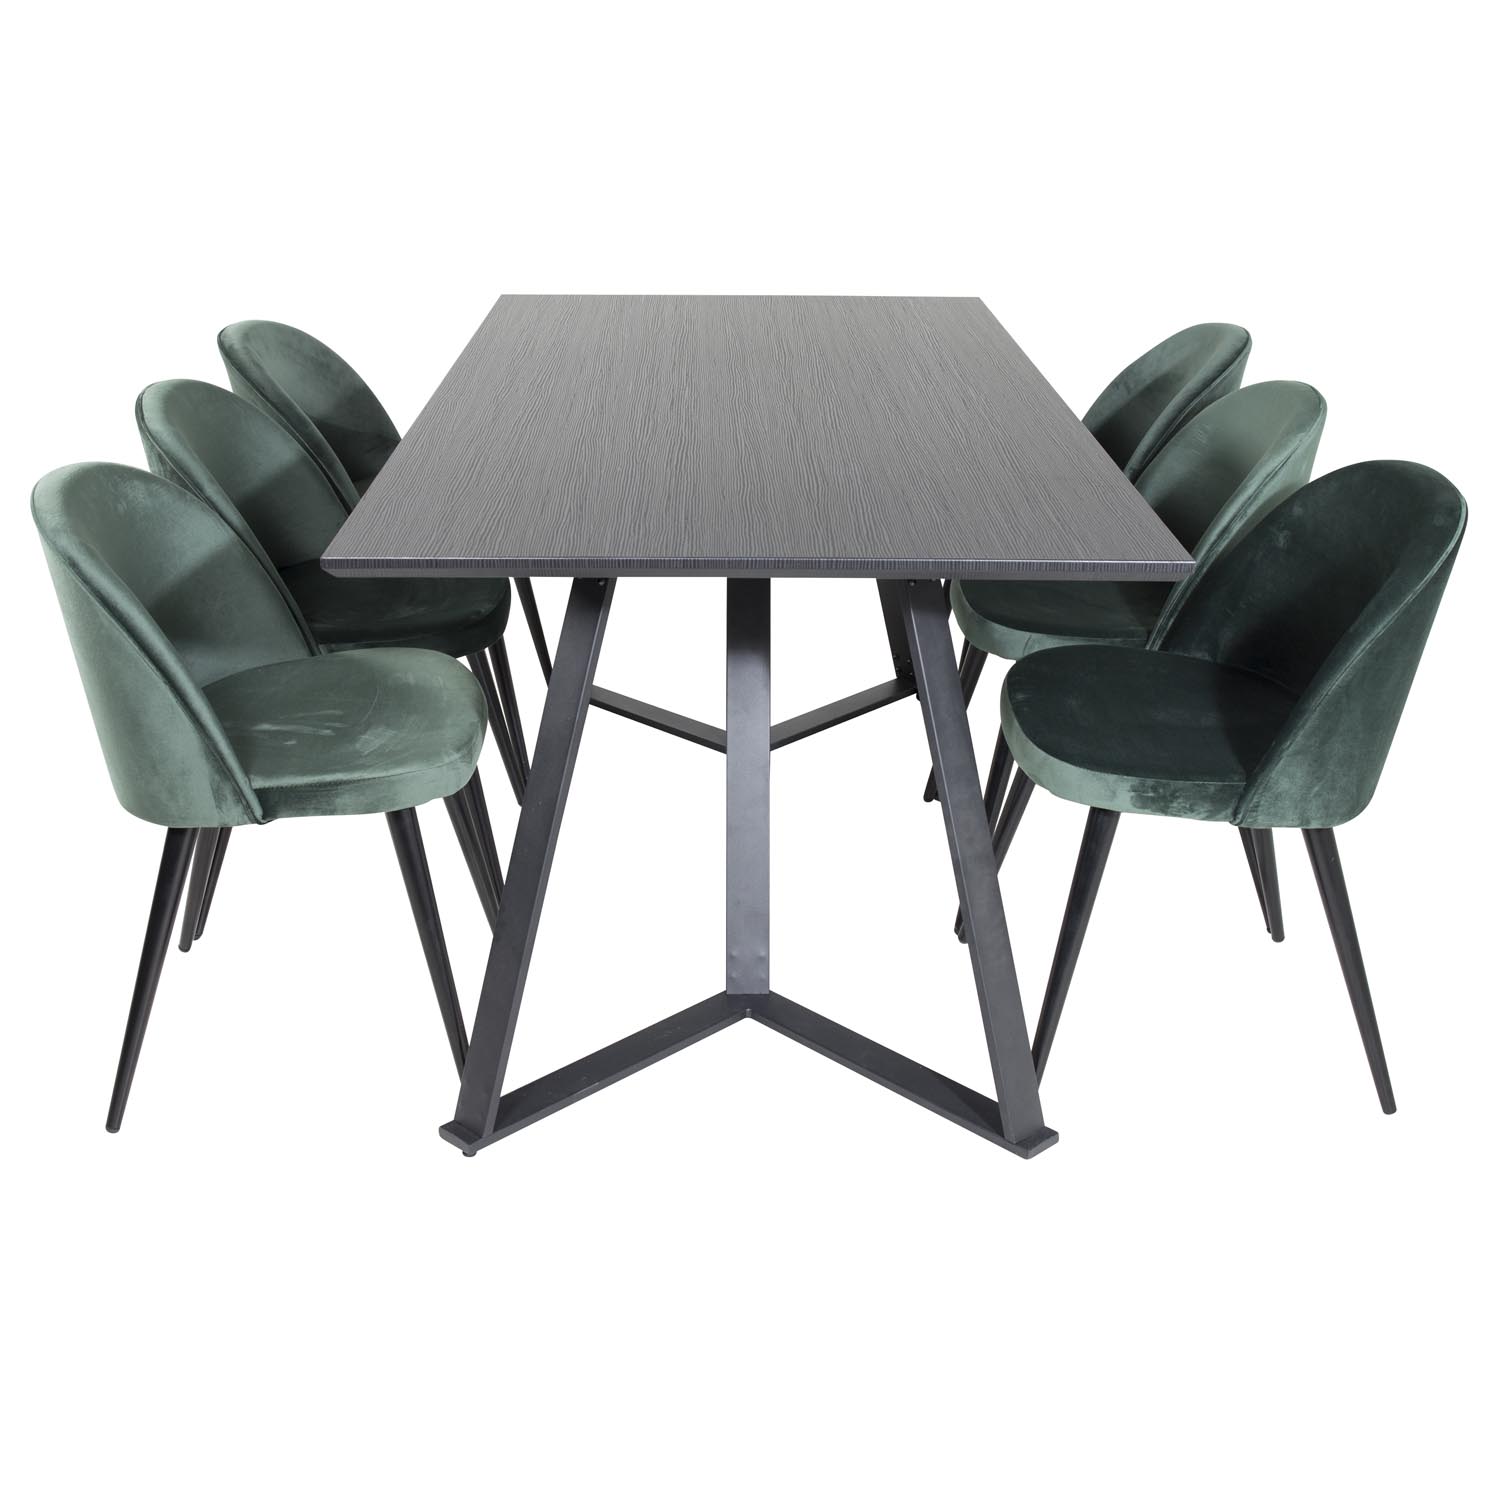 VENTURE DESIGN Marina spisebordssæt, m. 6 stole - sort finer/sort metal og grøn fløjl/sort metal